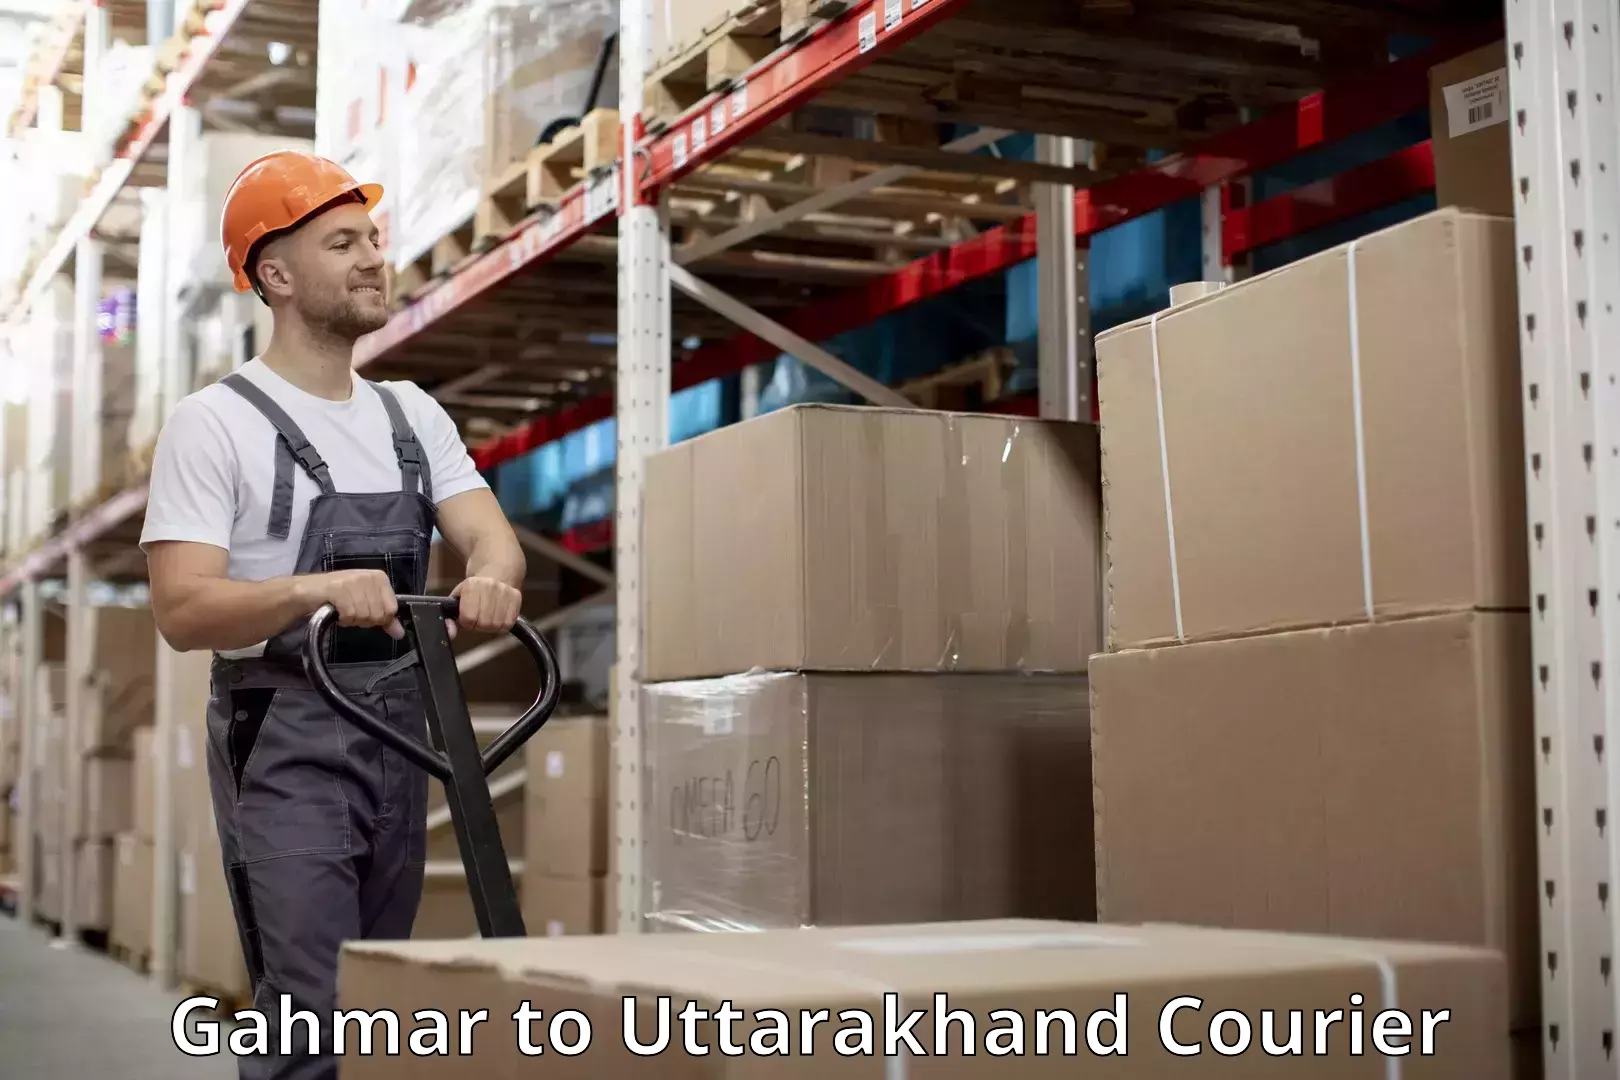 Luggage delivery optimization Gahmar to Uttarakhand